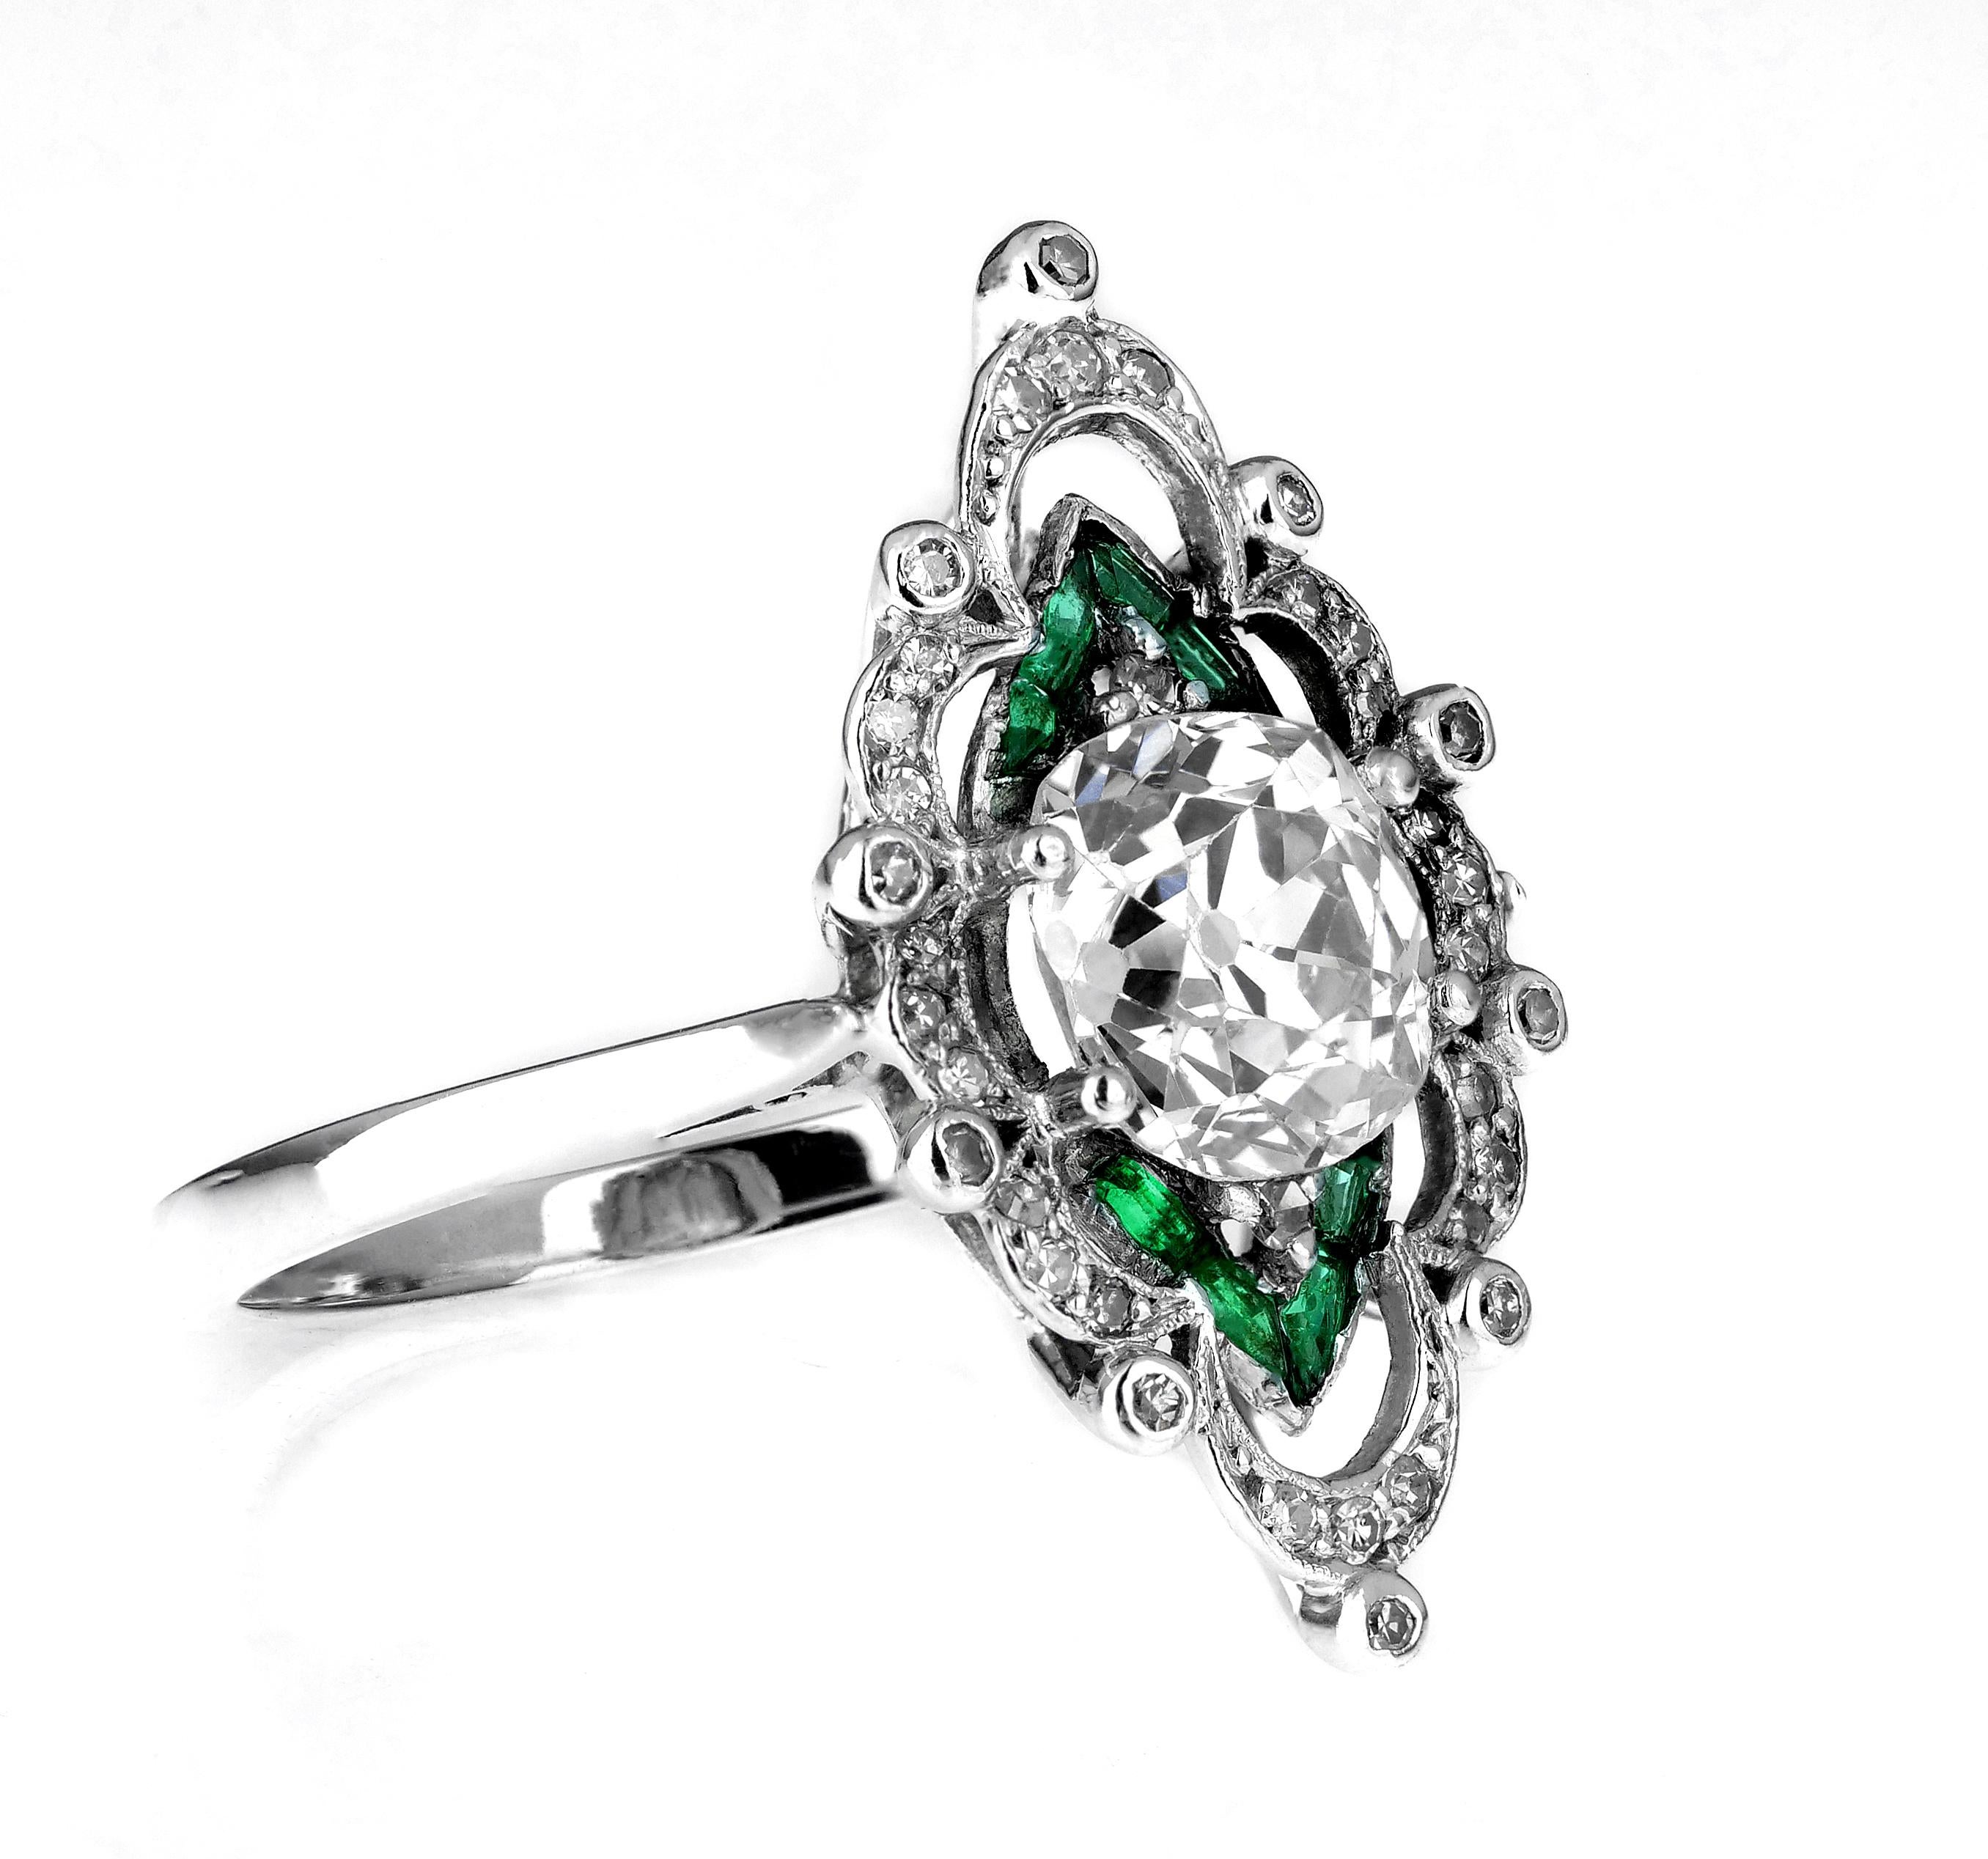 Ein lebendiger edwardianischer Diamant- und Smaragdring, gefasst in Platin. Sein wunderschönes Design besteht aus einem zentral gefassten alten Kissenschliff-Diamanten und Billionen von Smaragden, die von Diamantrollen umgeben sind. 

Dieser Ring